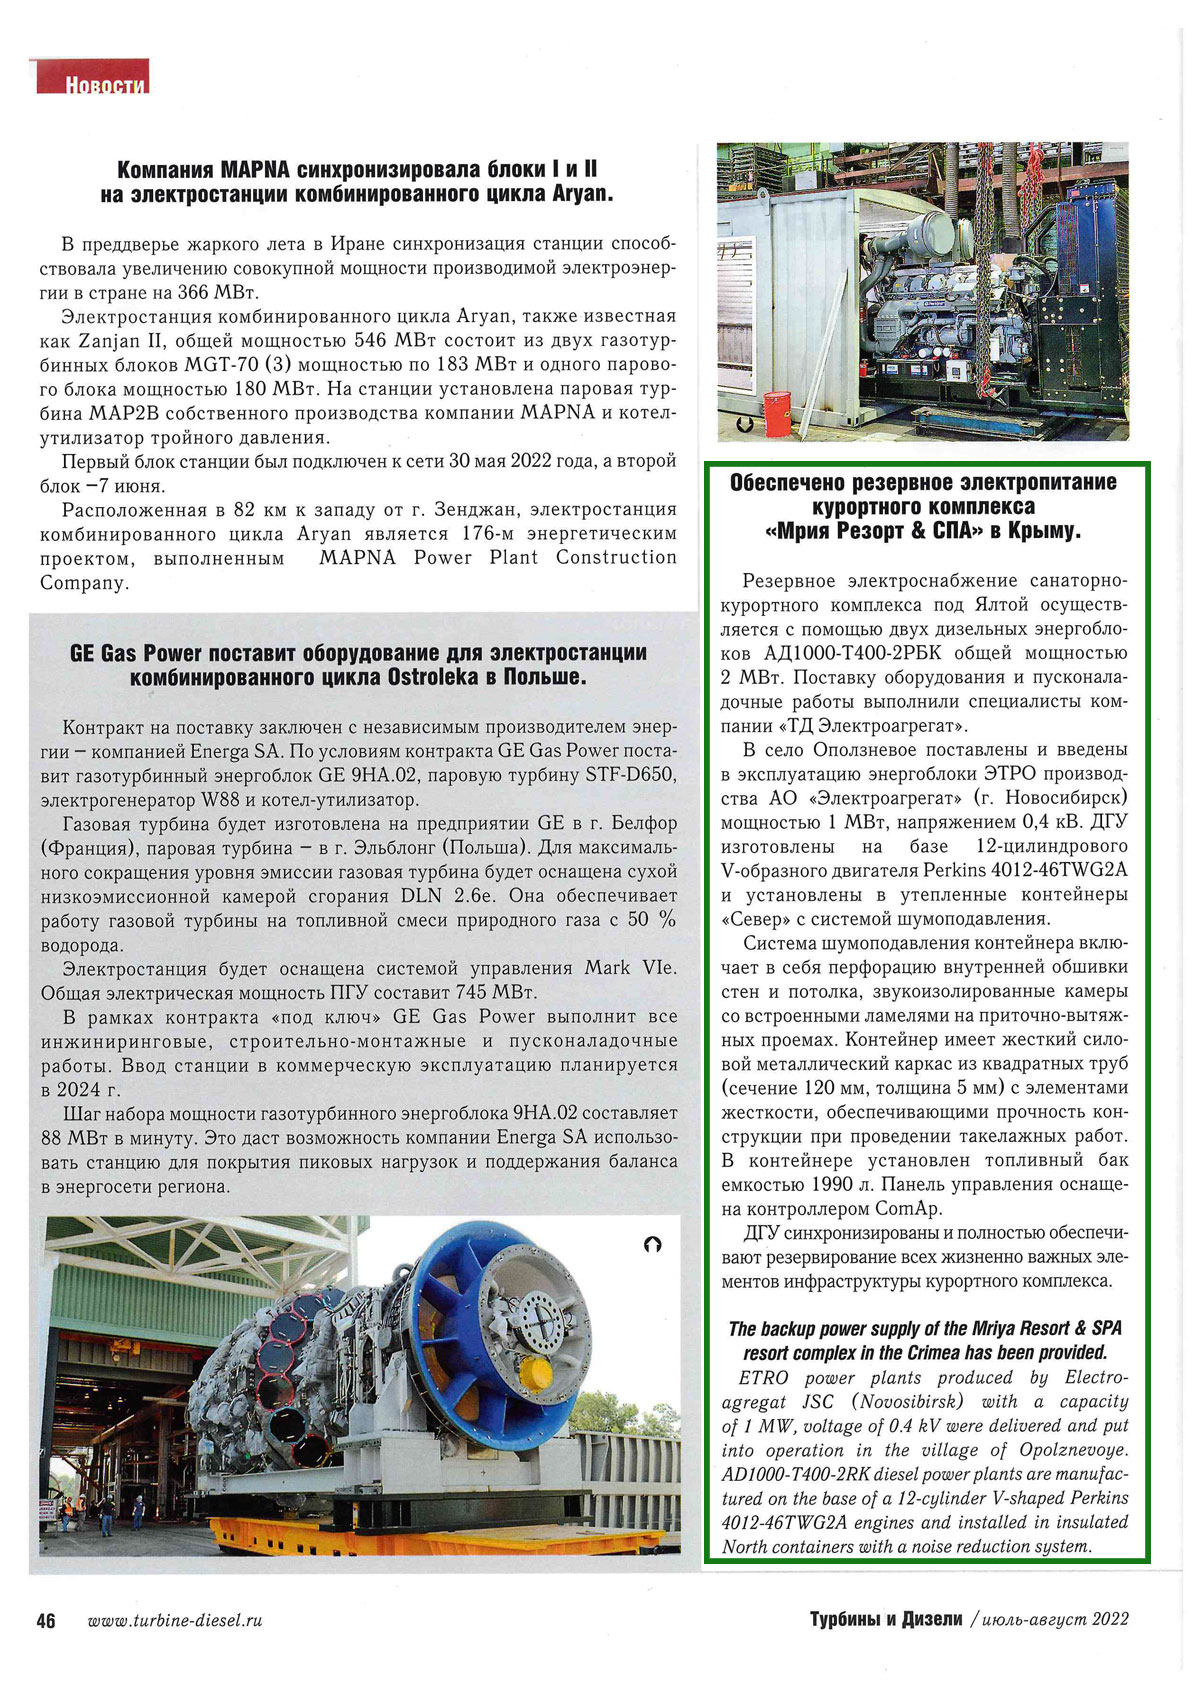 Страница журнала Турбины и дизели, июль-август 2022 Поставка двух ДГУ общей мощностью 2МВт